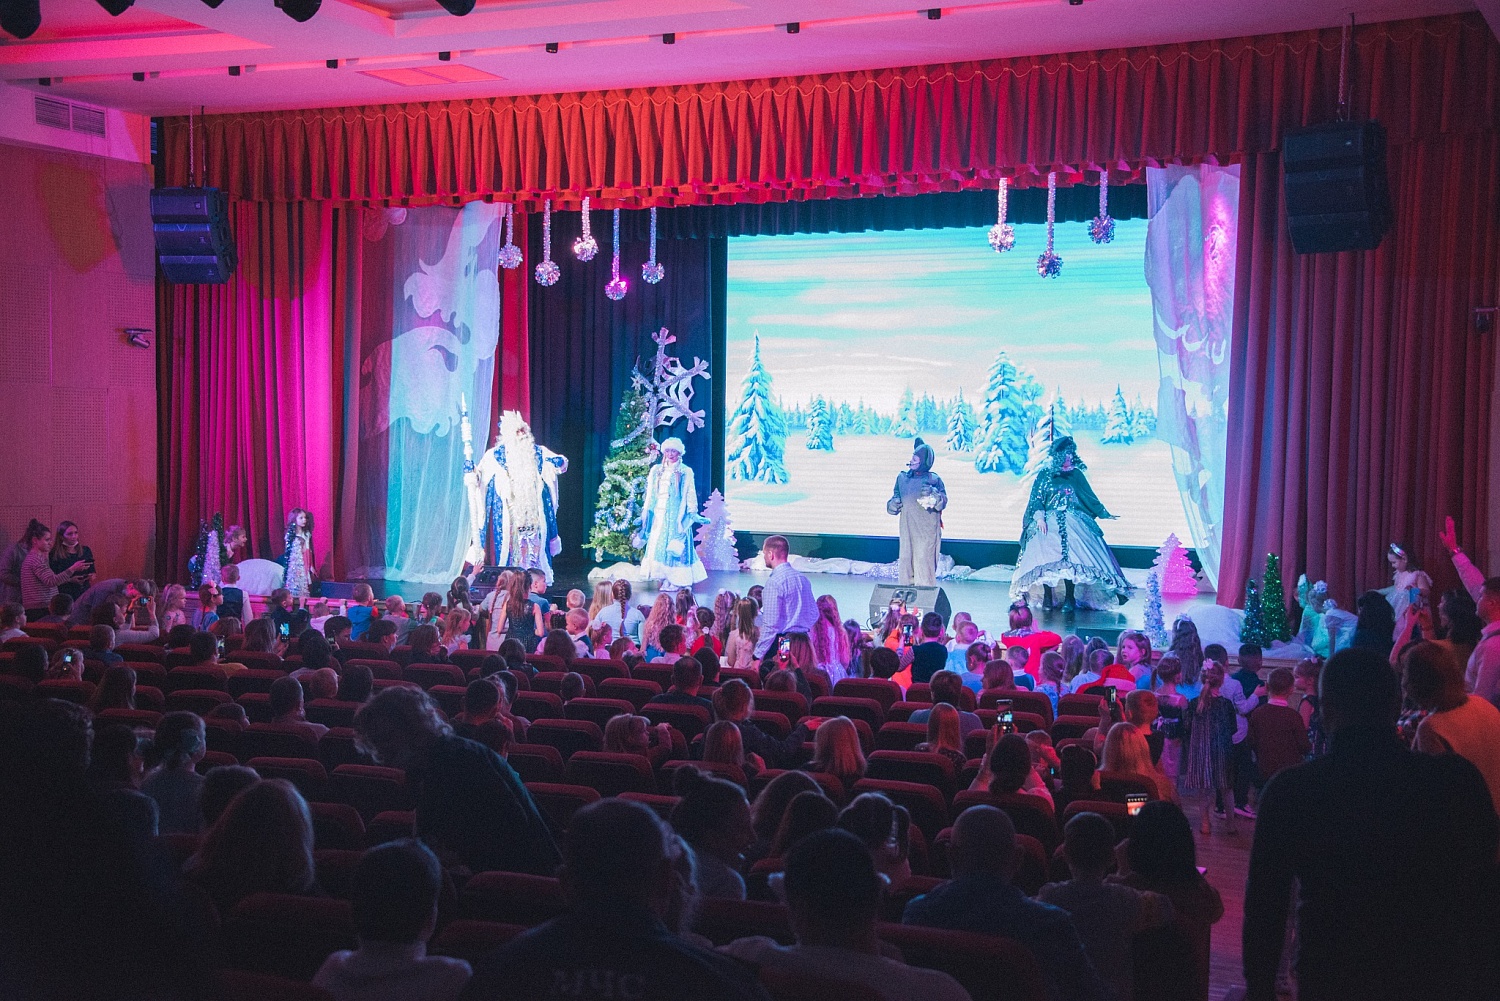 Громким детским смехом и радостными криками наполнилась сегодня Академия ГПС МЧС России, где для детей сотрудников вуза прошла Новогодняя ёлка